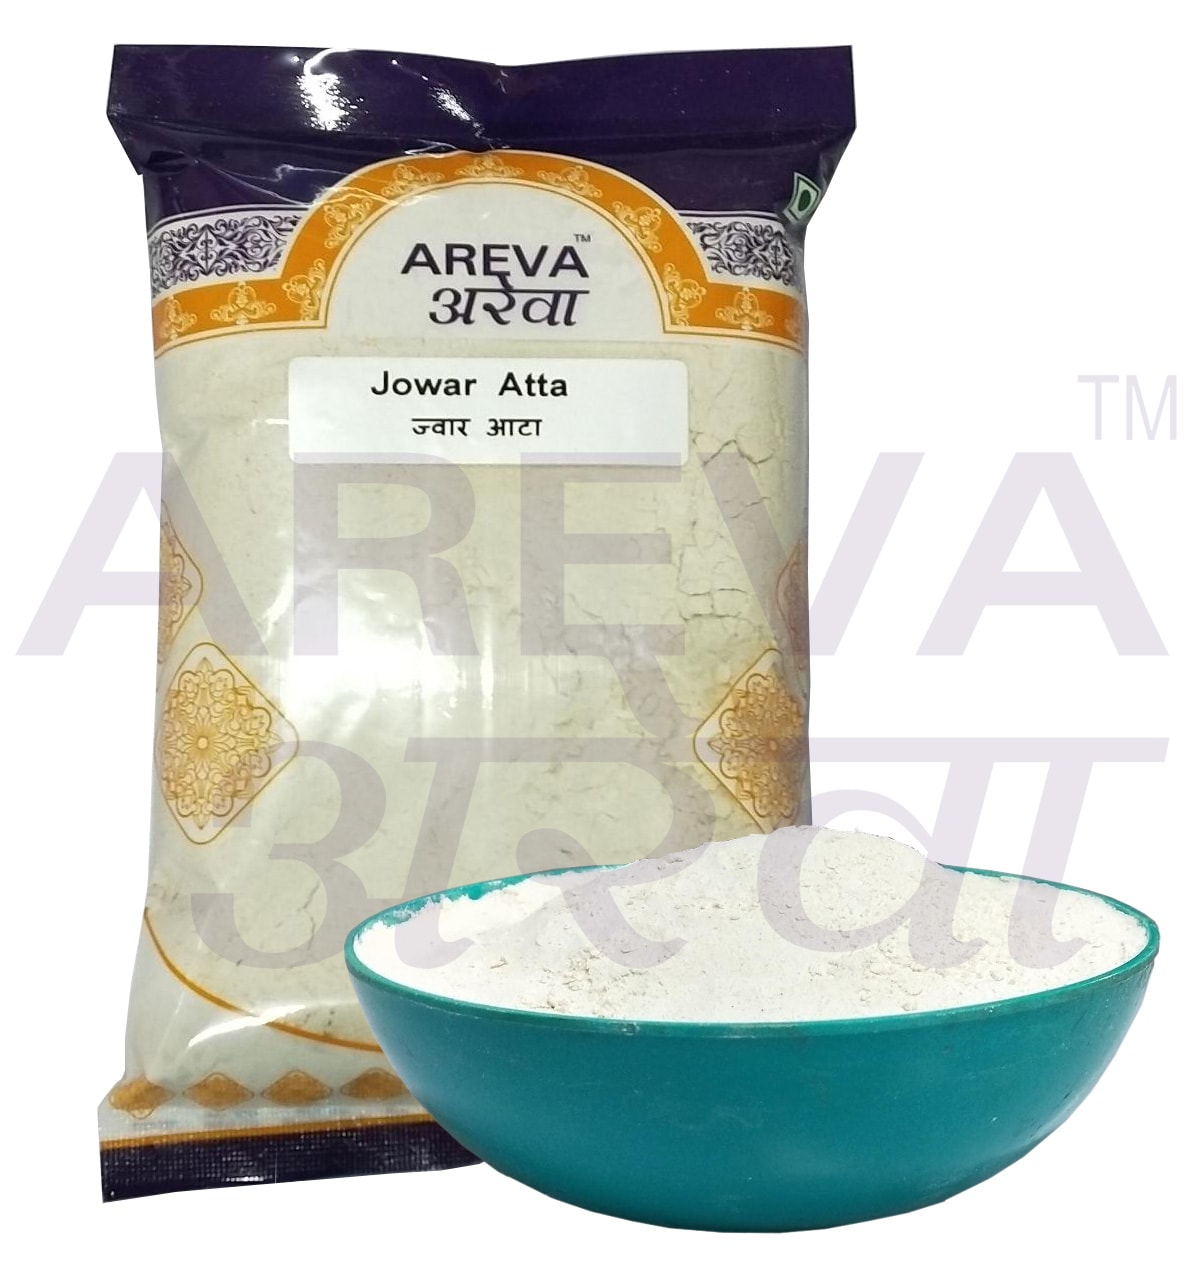 Jowar Atta / Flour